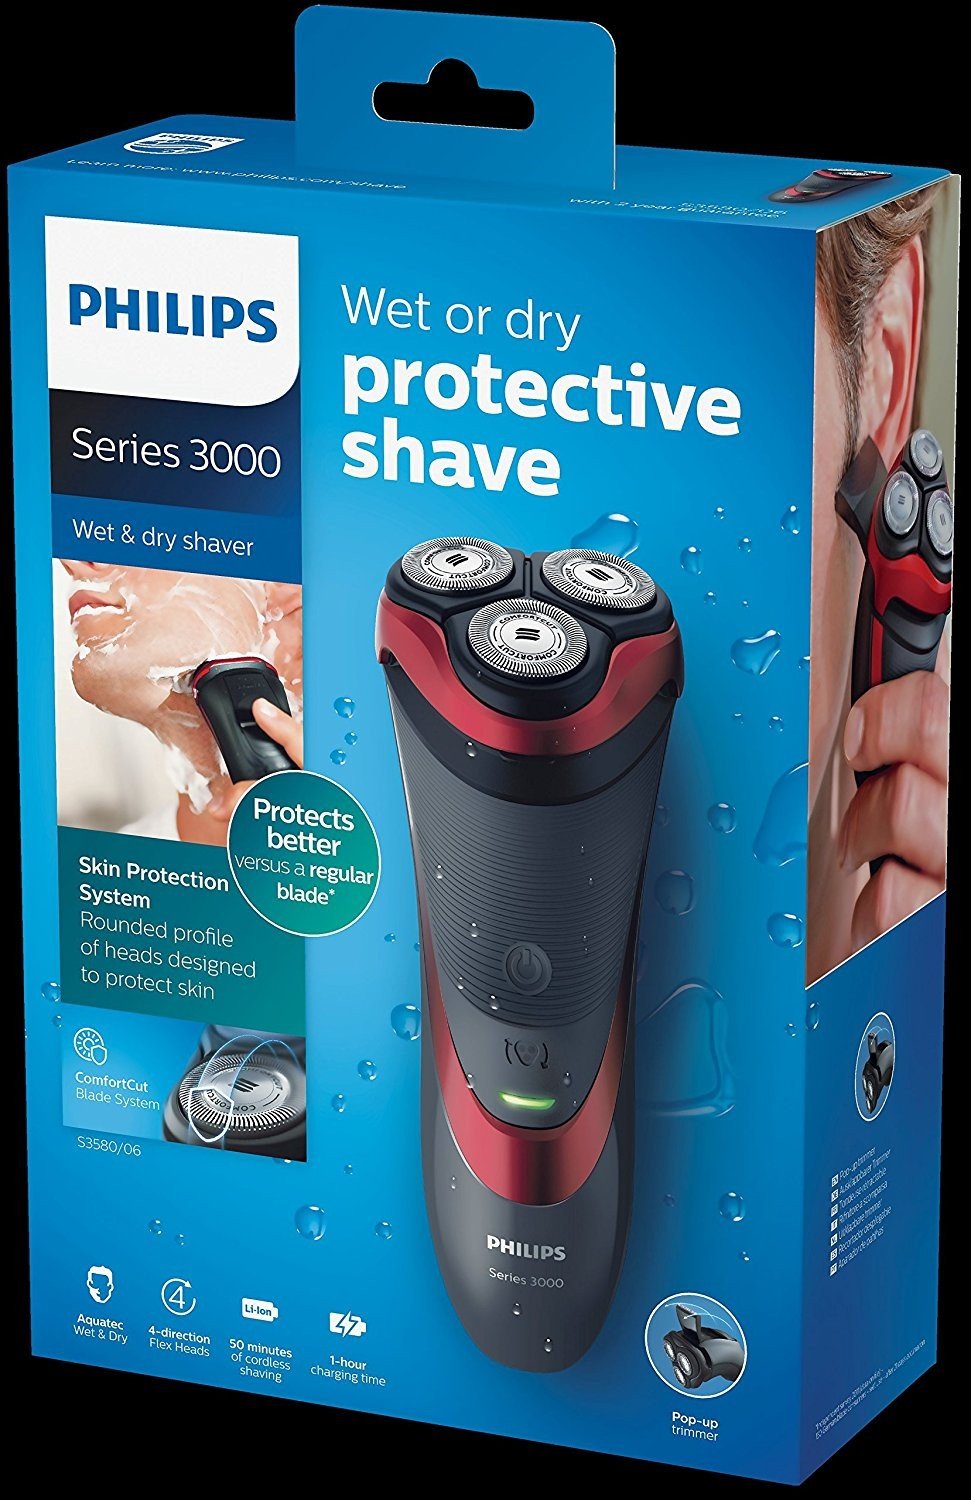 Филипс Сериес 3000. Philips Shaver Series 3000. Philips wet and Dry. Philips wet and Dry зарядное устройство. Philips series 3000 цена